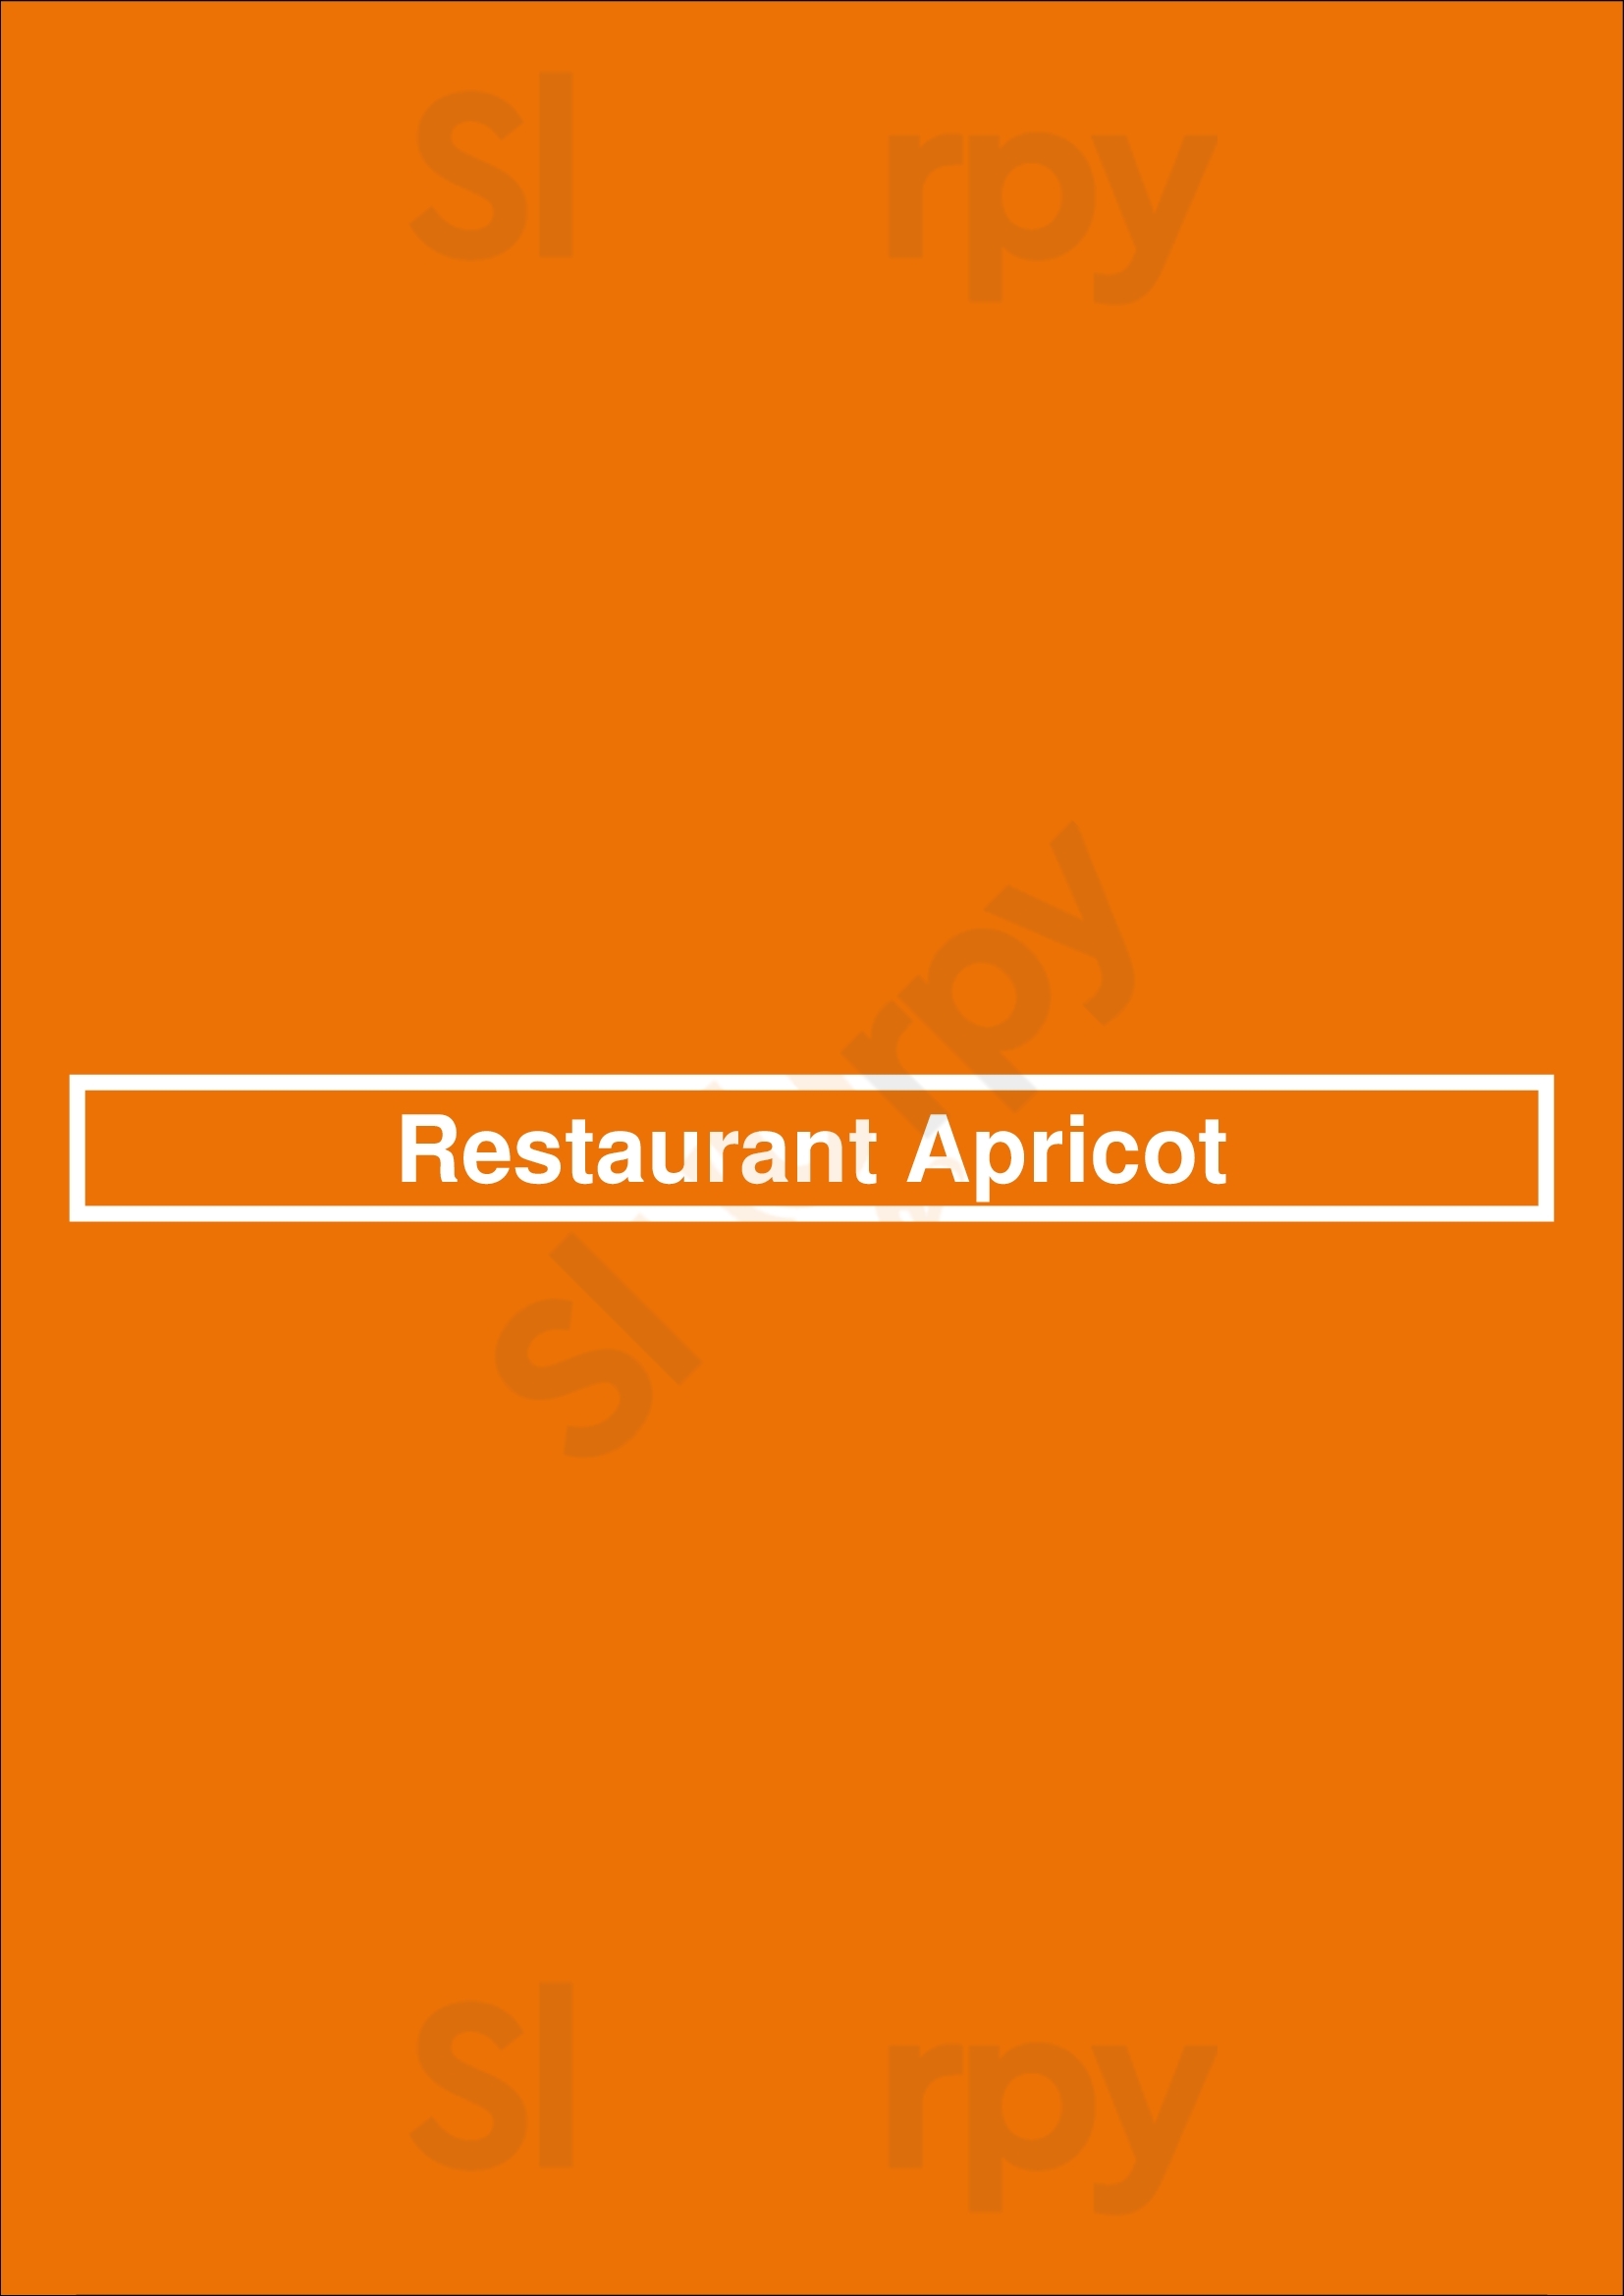 Restaurant Apricot Assen Menu - 1